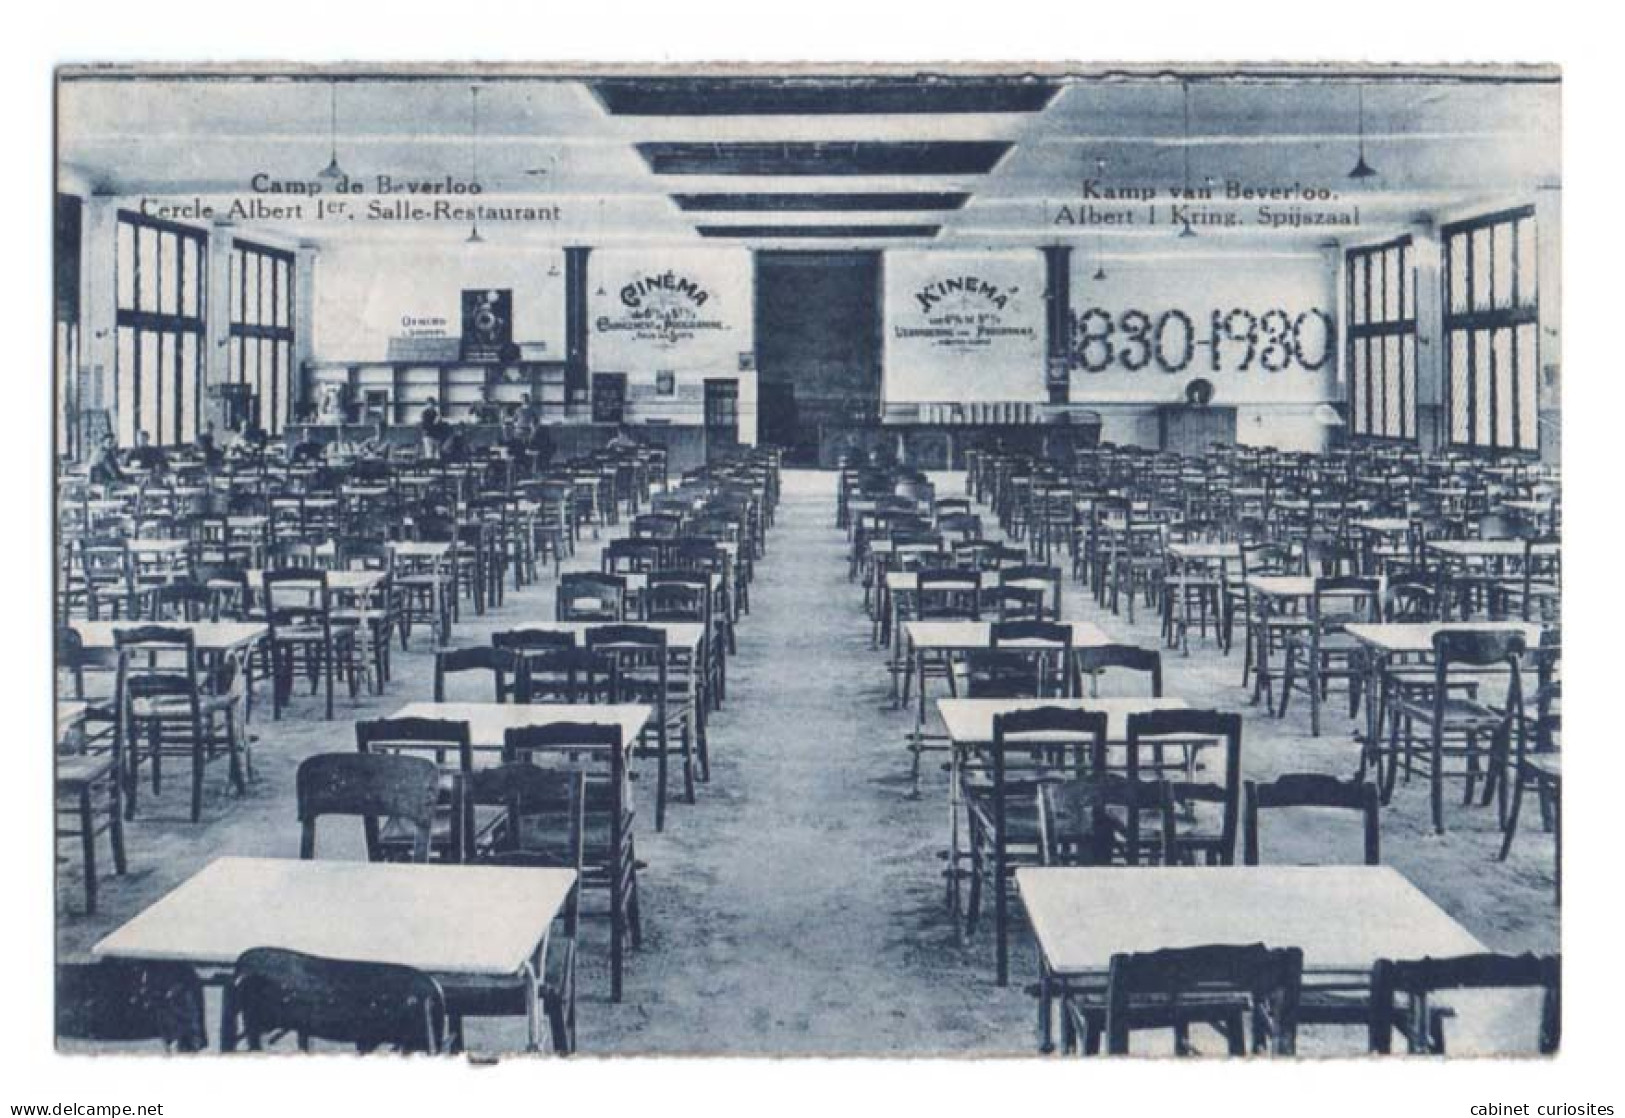 CAMP DE BEVERLOO - Cercle Albert 1er - Salle Restaurant - Kamp Van Beverloo - Albert 1 Kring - Spijszaal - 1830-1930 - Leopoldsburg (Camp De Beverloo)